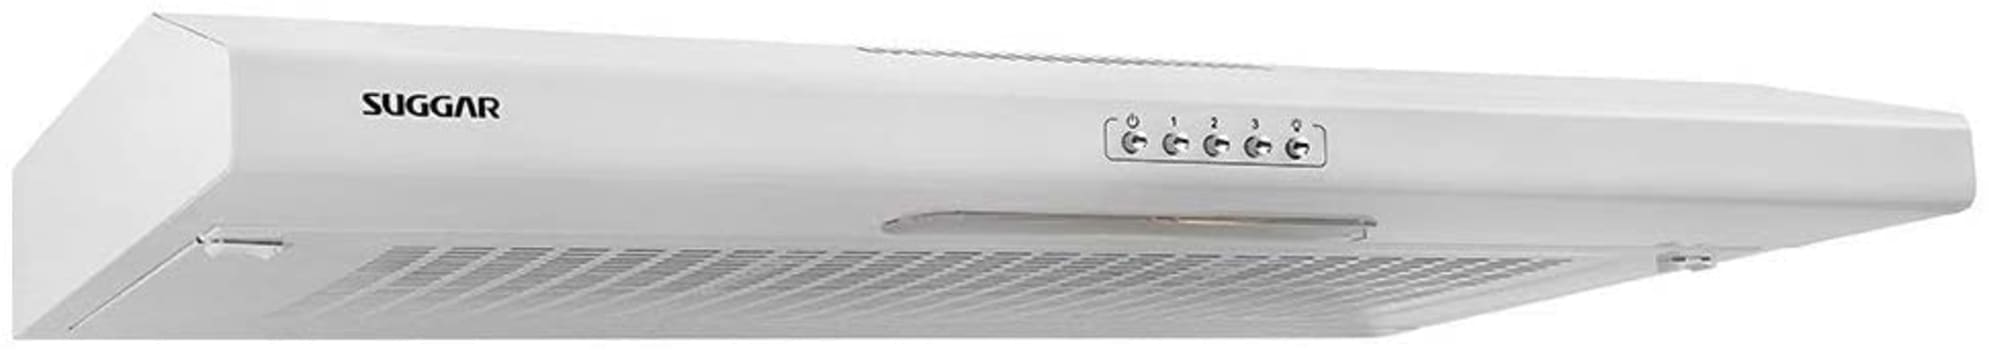 Depurador de ar Slim branco com manta 80cm 110V Suggar - DI801BR